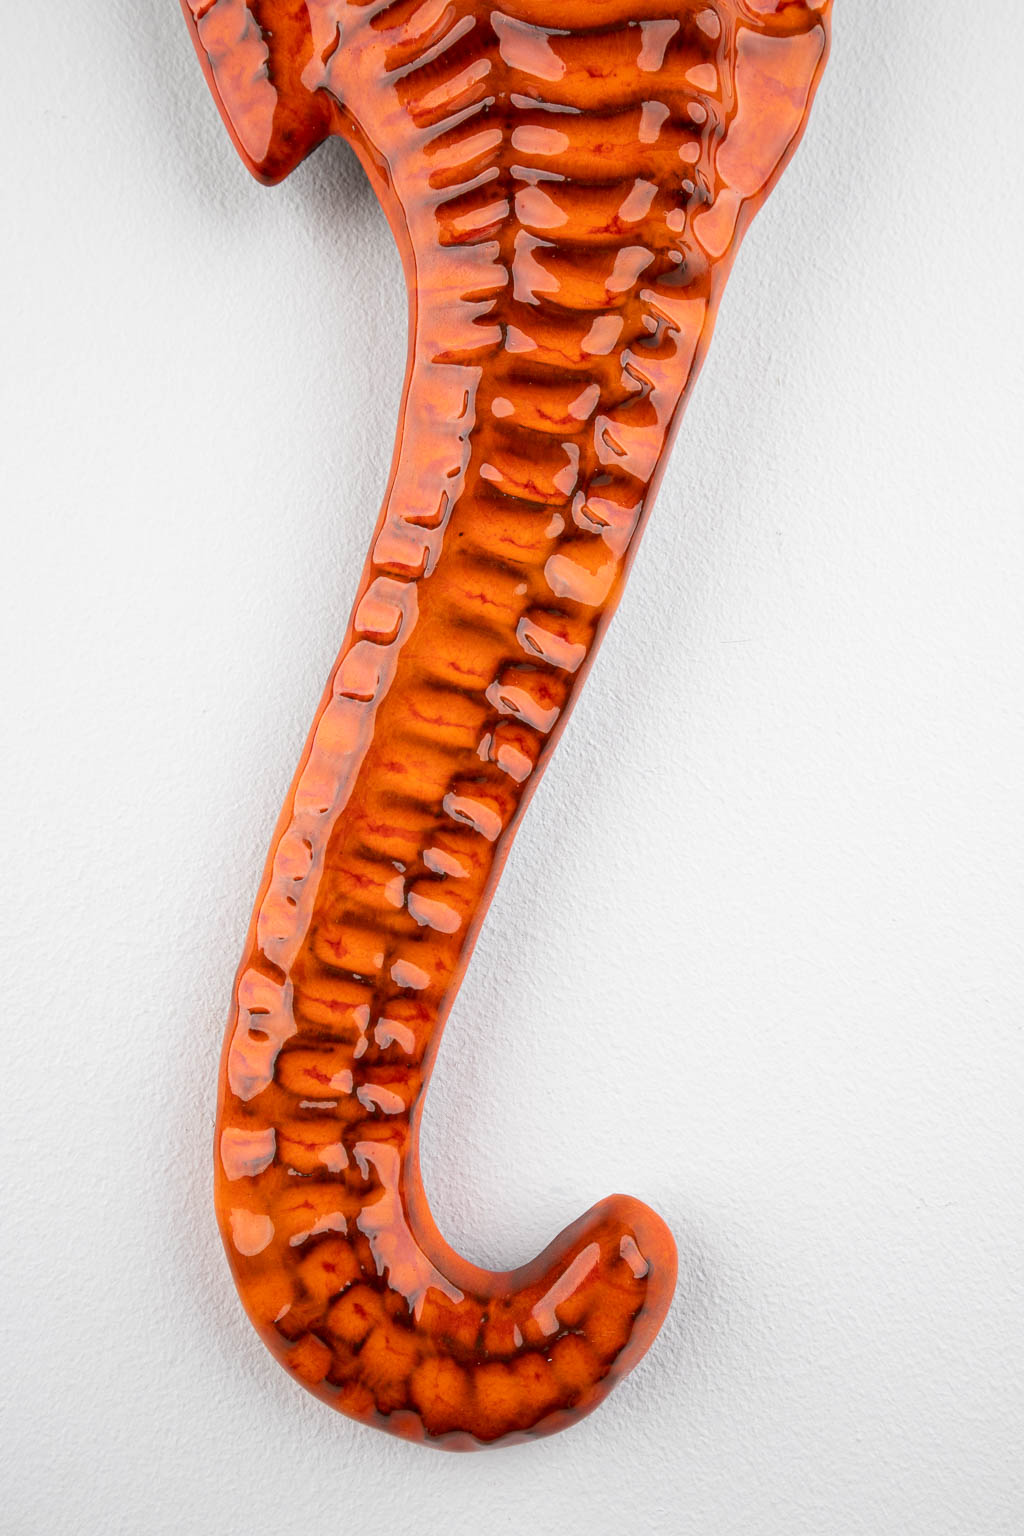 Five Seahorses, glazed ceramics, Sanchez, Amphora, Bayer. 20th C . (W:16 x H:45 cm)